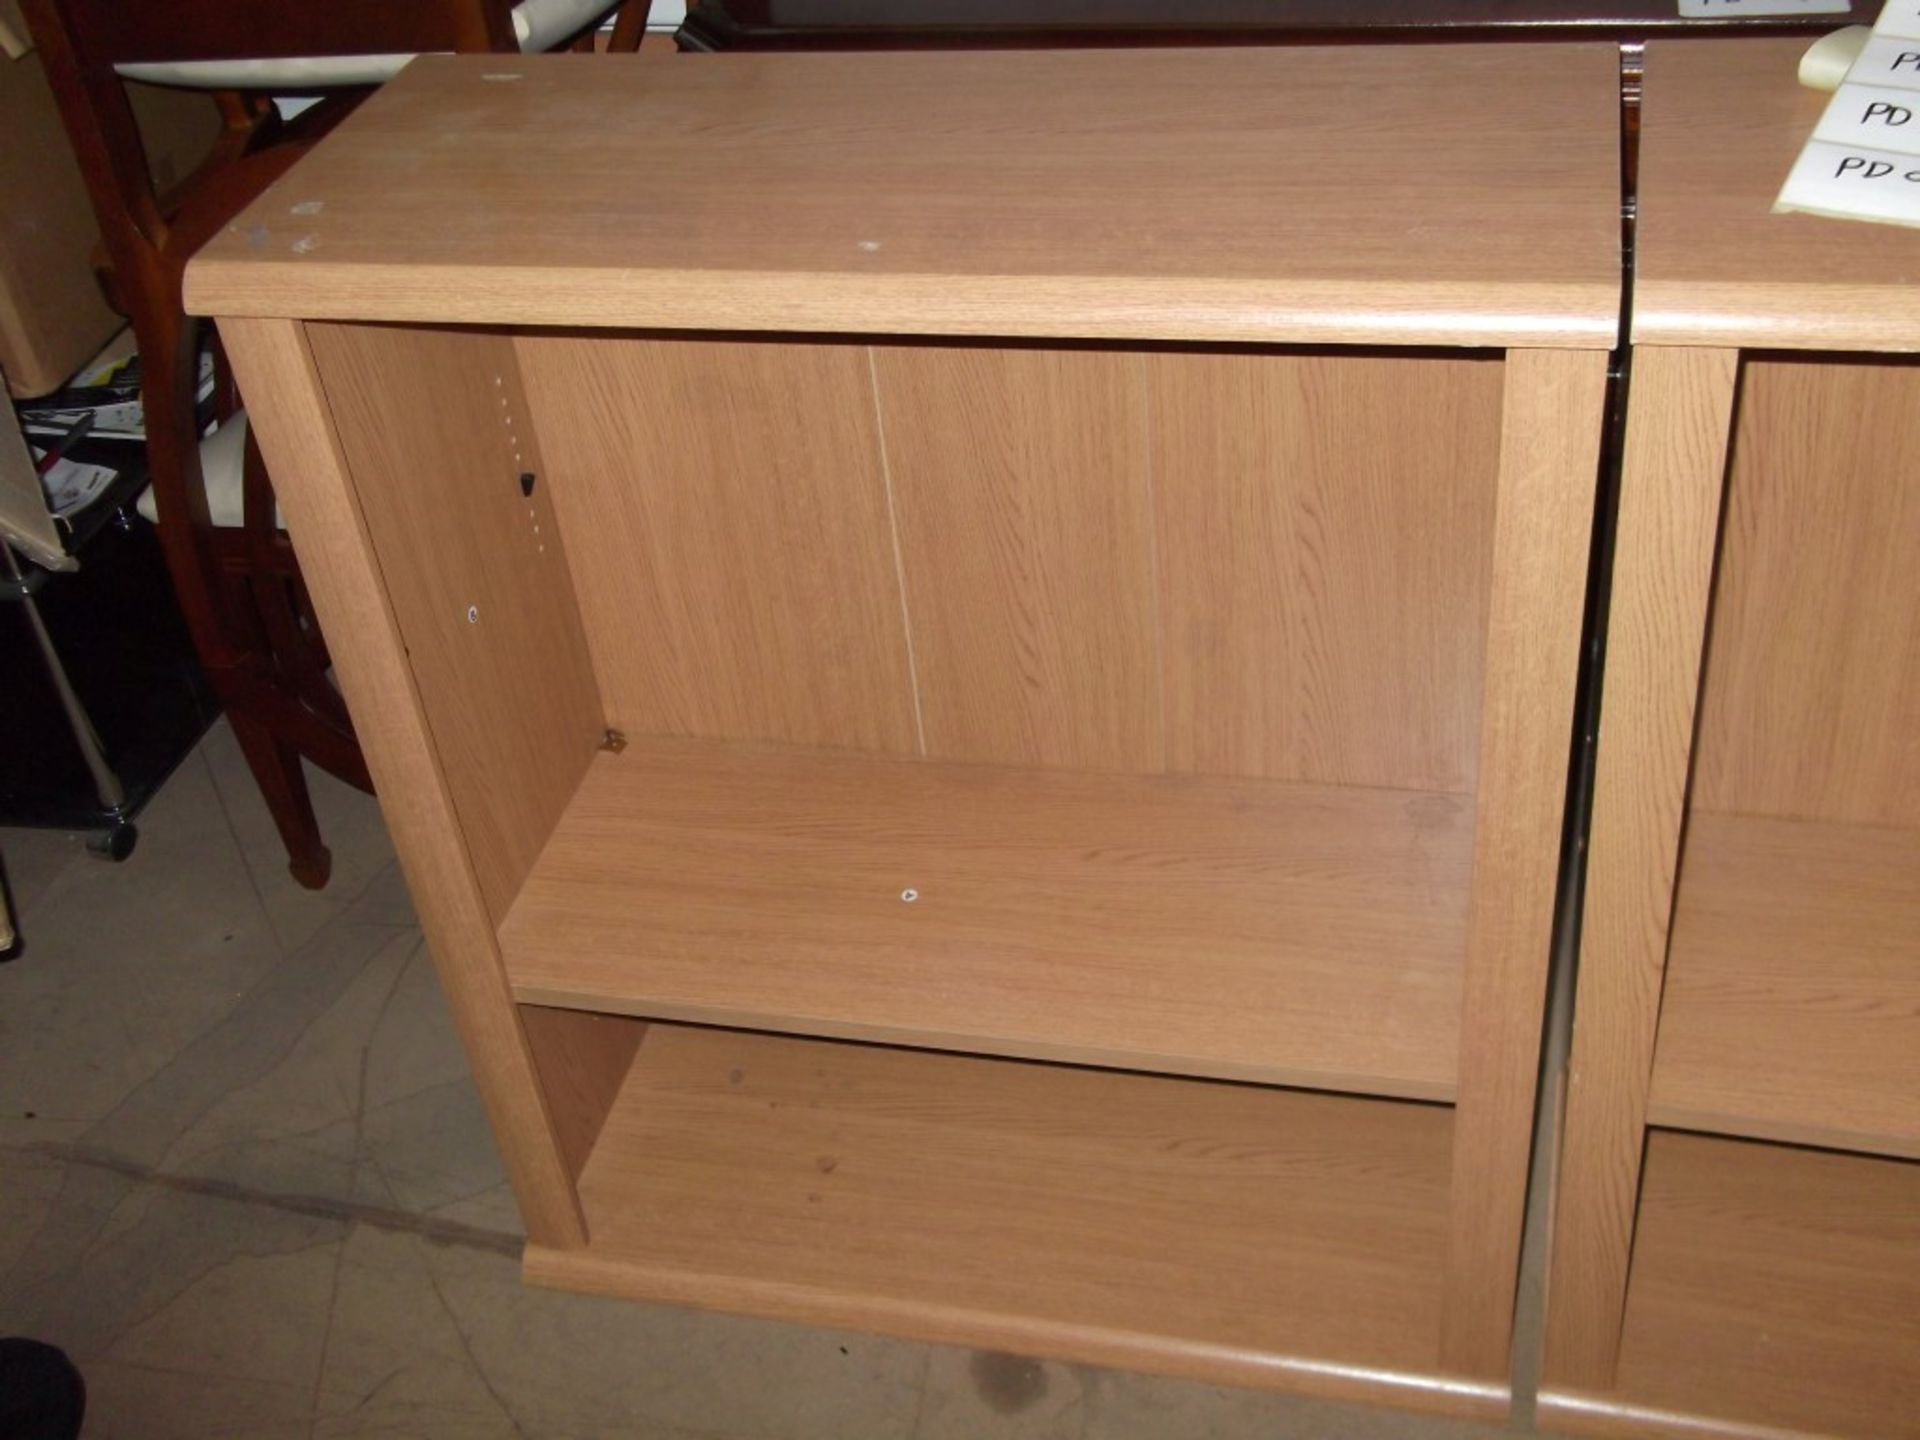 2 x Bookcases - Prebuilt - Dimensions: H80 x W80 x D33cm - PD069 / PD070 - CL079 - Location: Leeds - Image 4 of 5